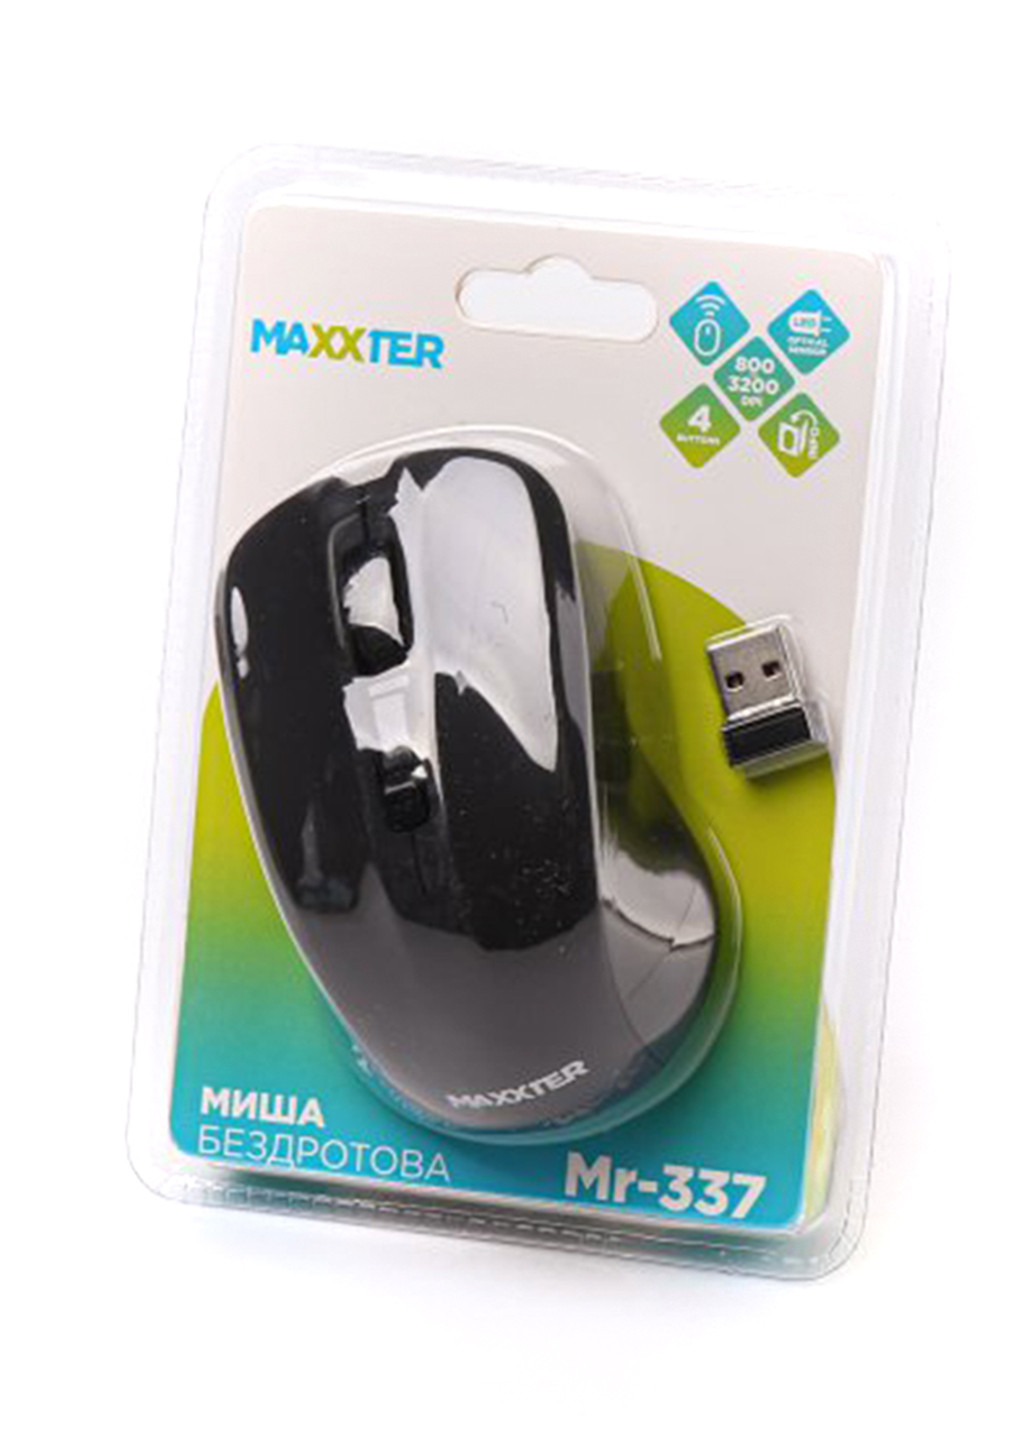 Мышь беспроводная Maxxter mr-337 (138100200)